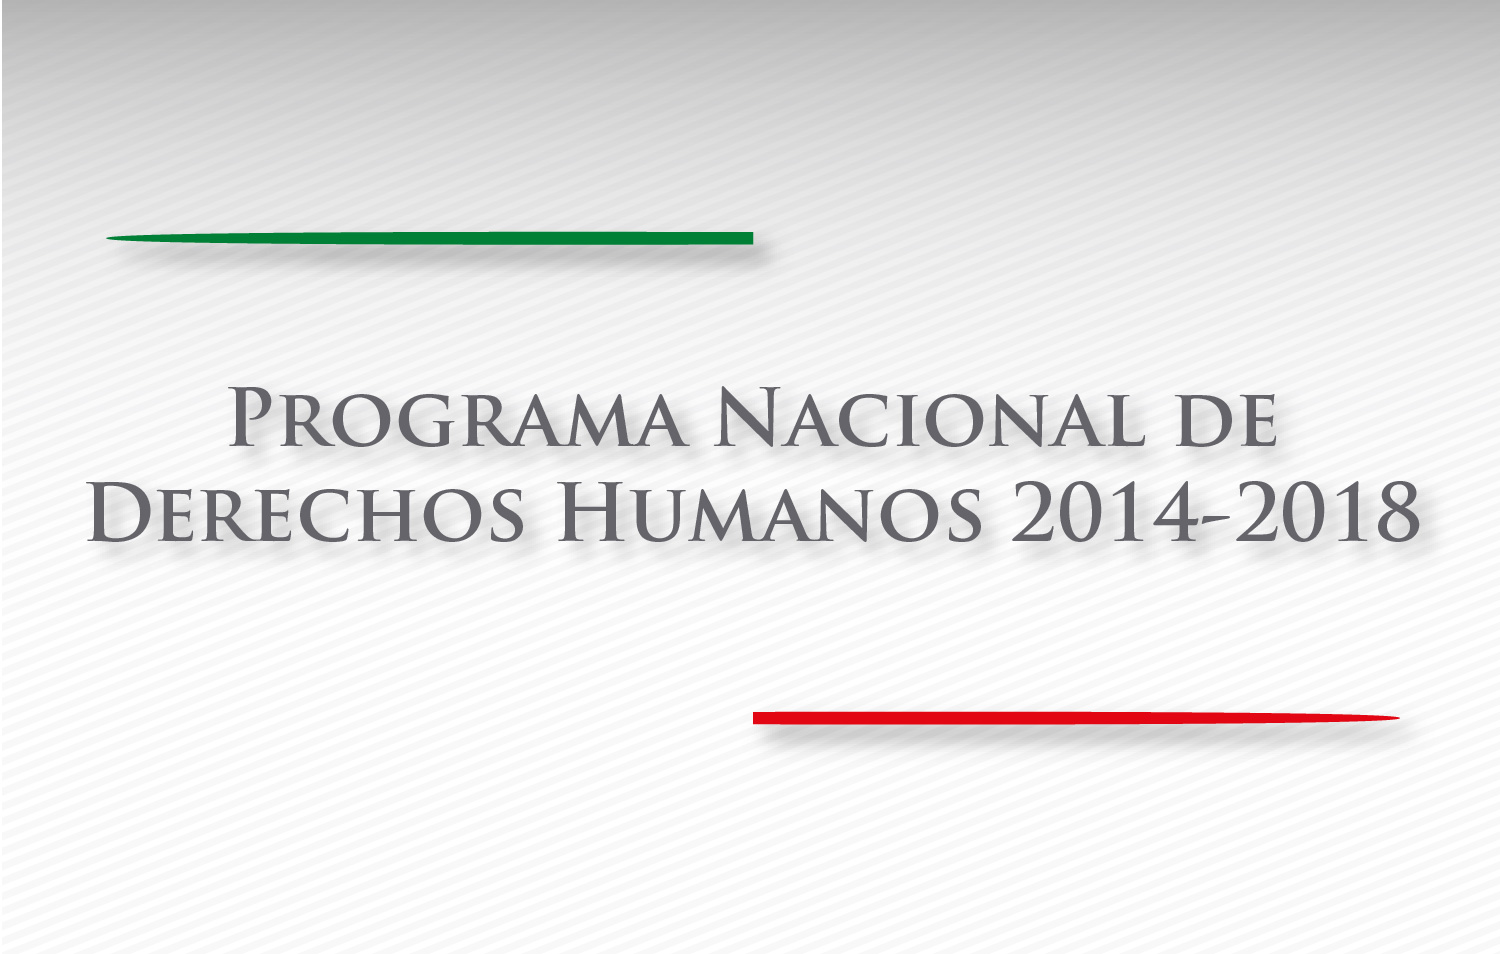 Programa Nacional de Derechos Humanos 2014-2018